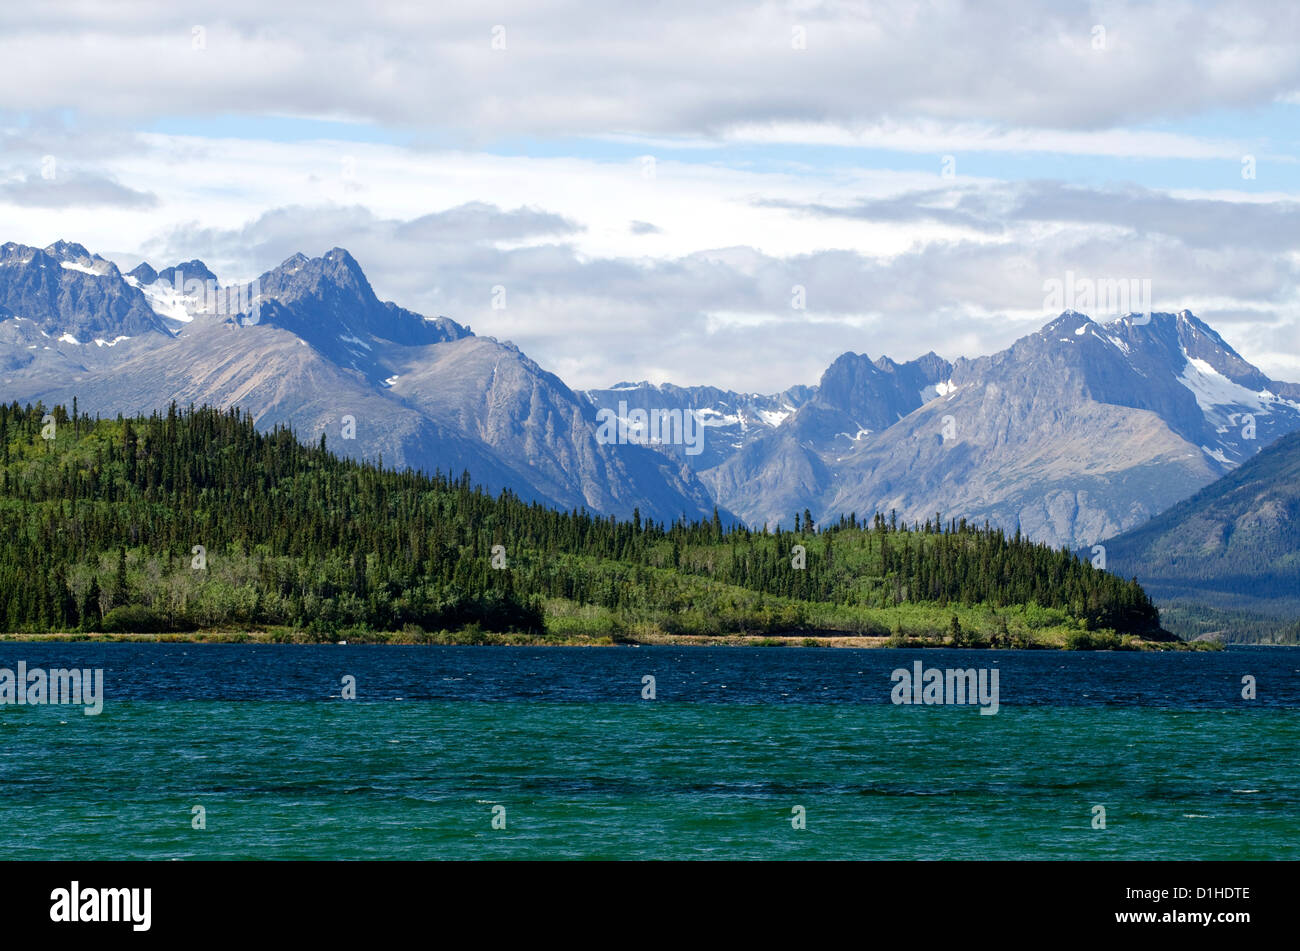 Recherche à travers le lac Bennett à grands sommets de montagnes, dans la ville de Carcross, dans le Territoire du Yukon, Canada. Banque D'Images